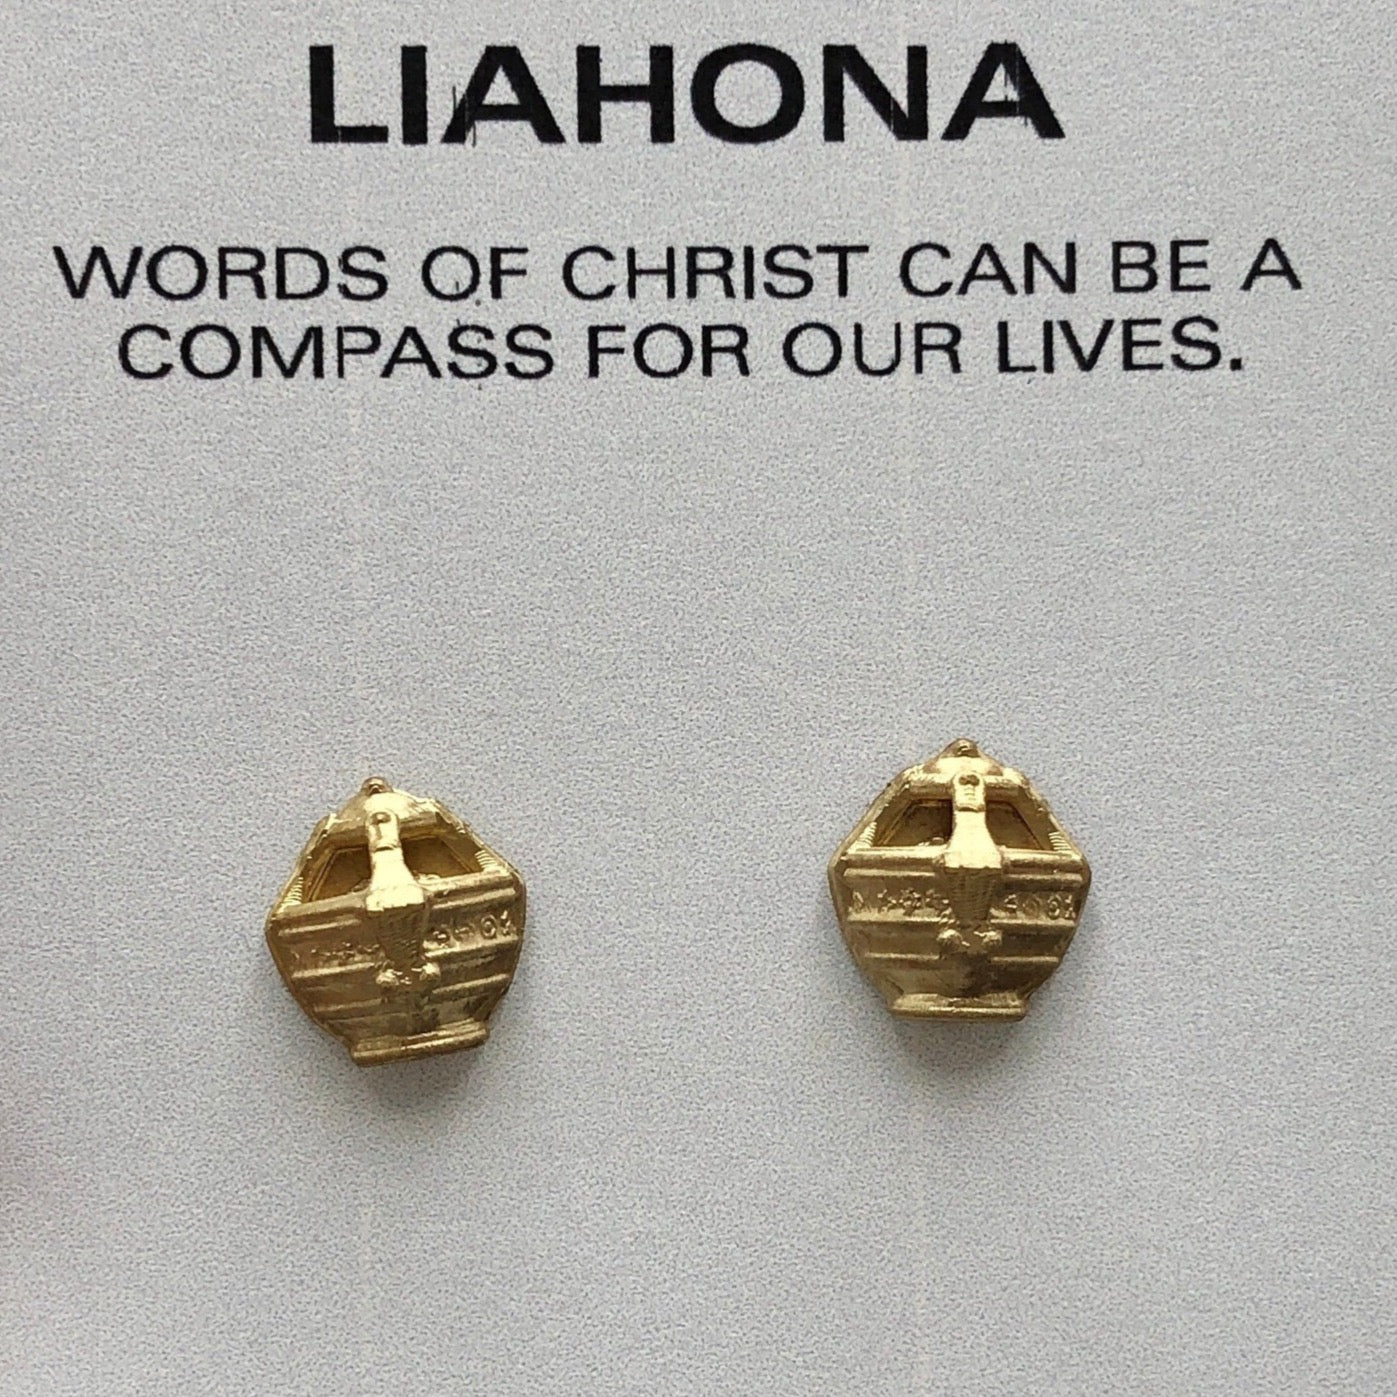 Liahona Earrings, LDS Gift for Mom LDS Baptism Gift Earrings Liahona Stud Earrings Book of Mormon Story Gift Baptism Gift Seminary Teacher